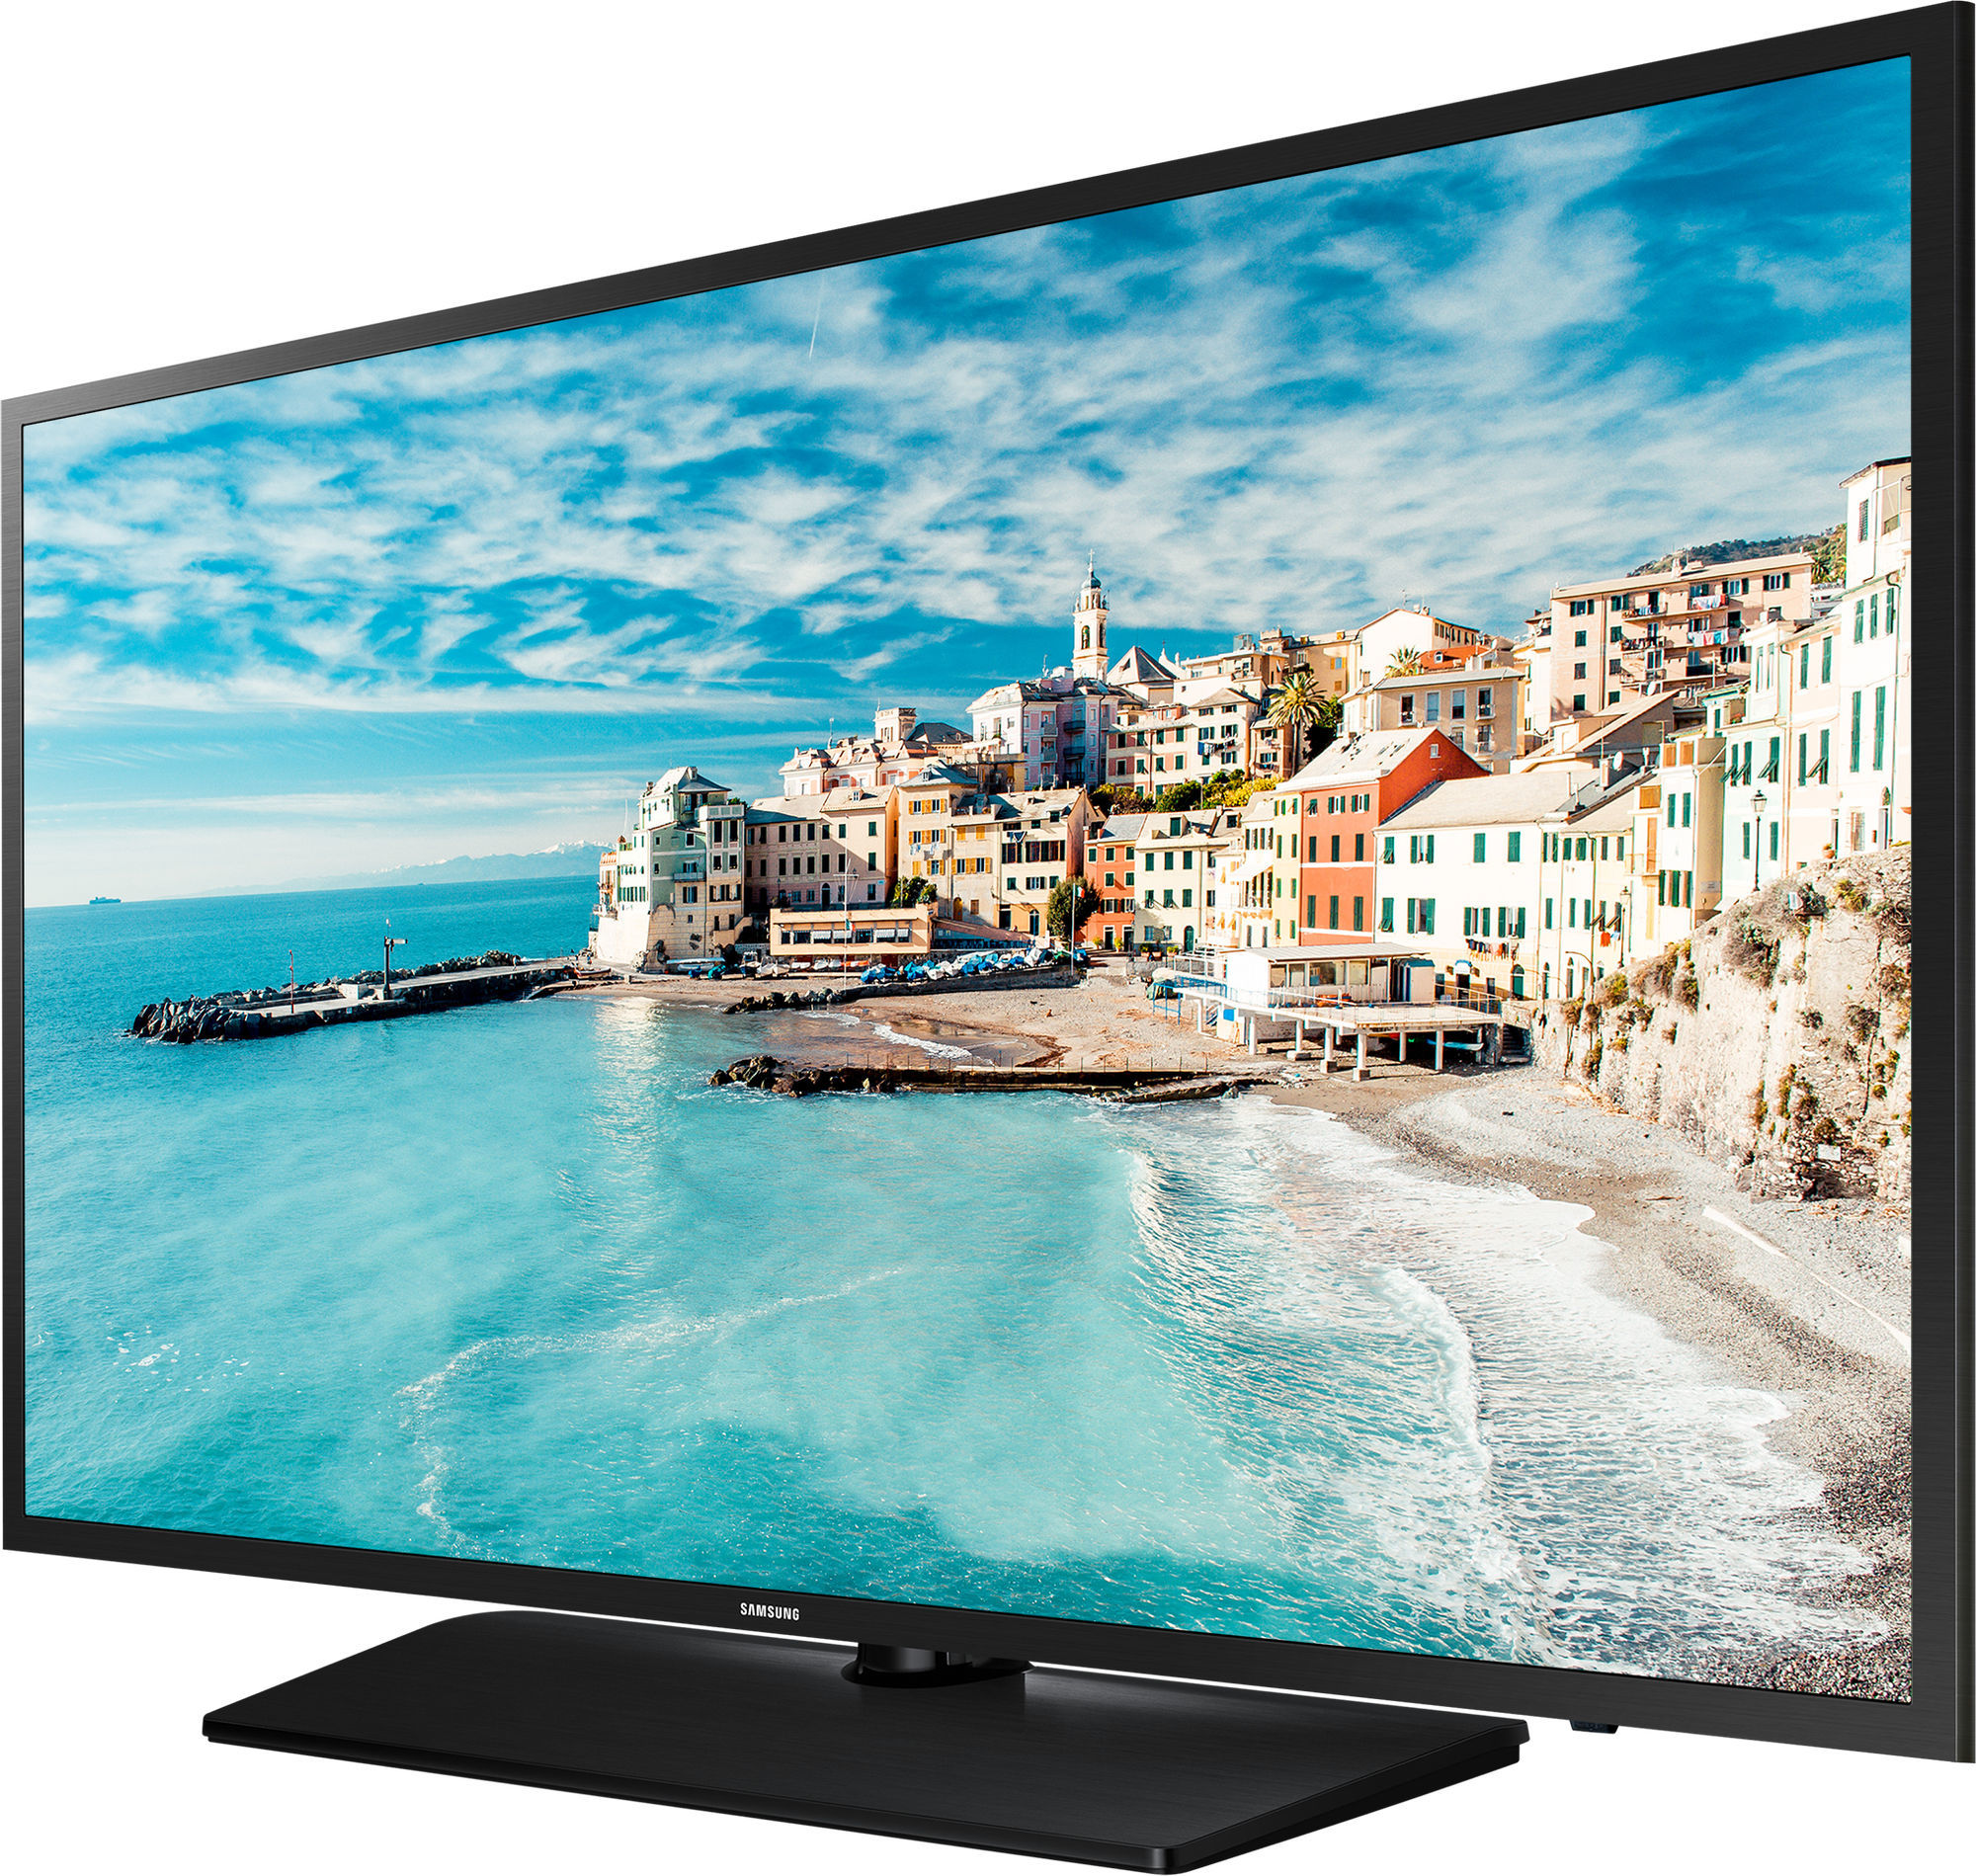 Купить телевизор в магазине самсунг. Телевизор Samsung 32n4500. Телевизор самсунг 32n 5000. Телевизор Samsung 32n4000. Самсунг 32.d20yb.